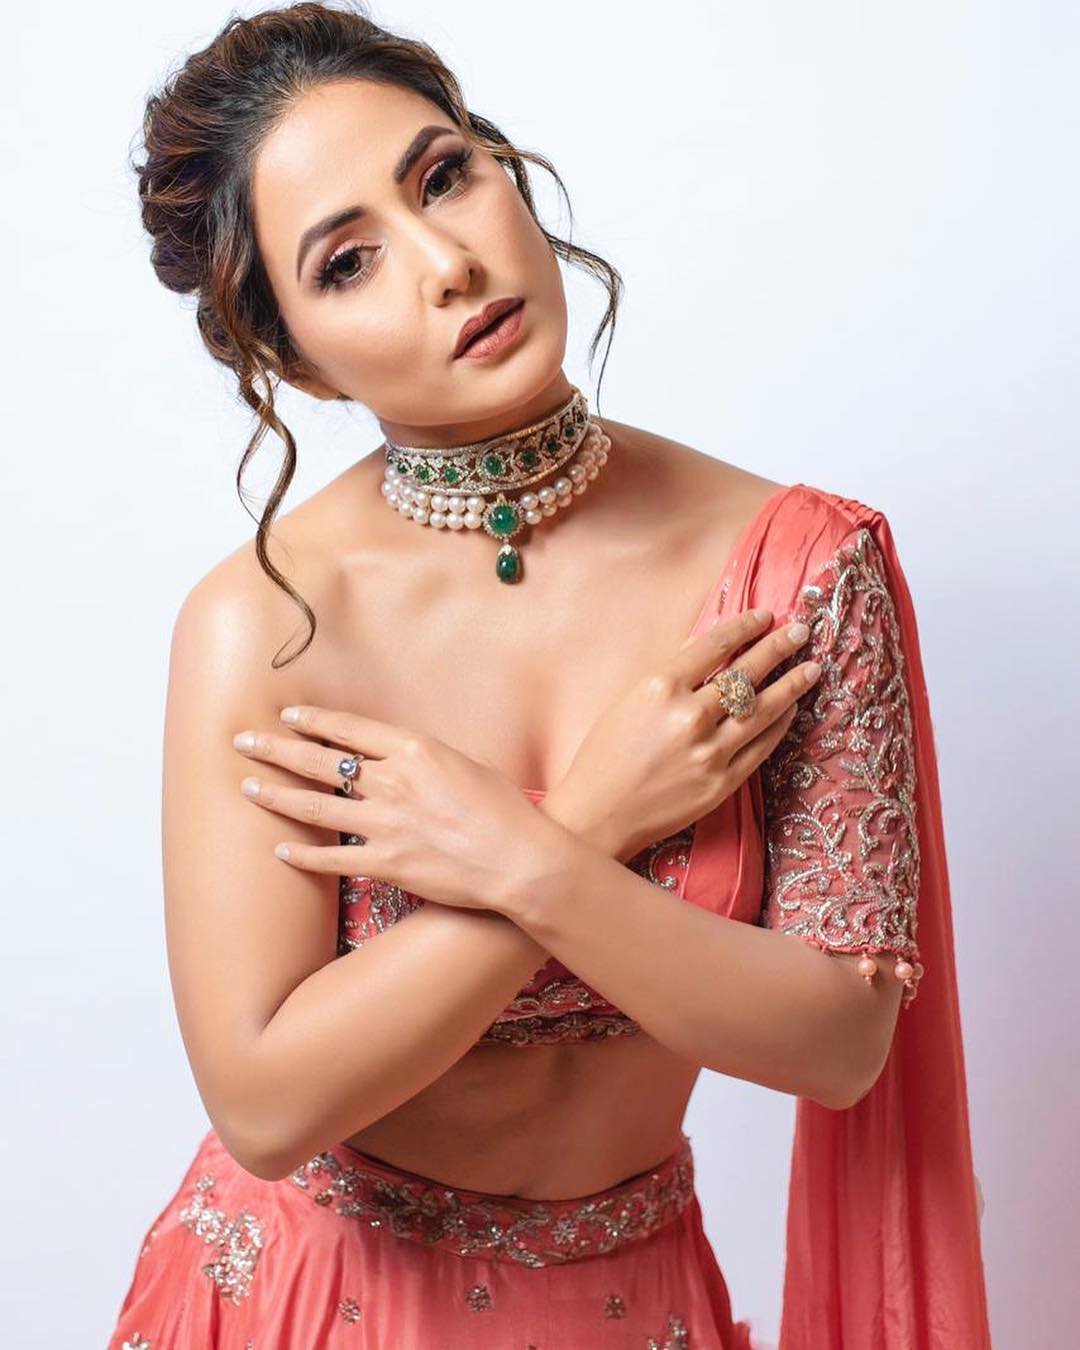 Bombay-Times-Fashion-Week:-Hina-Khan-in-Peach-Colored-Lehenga-Choli 